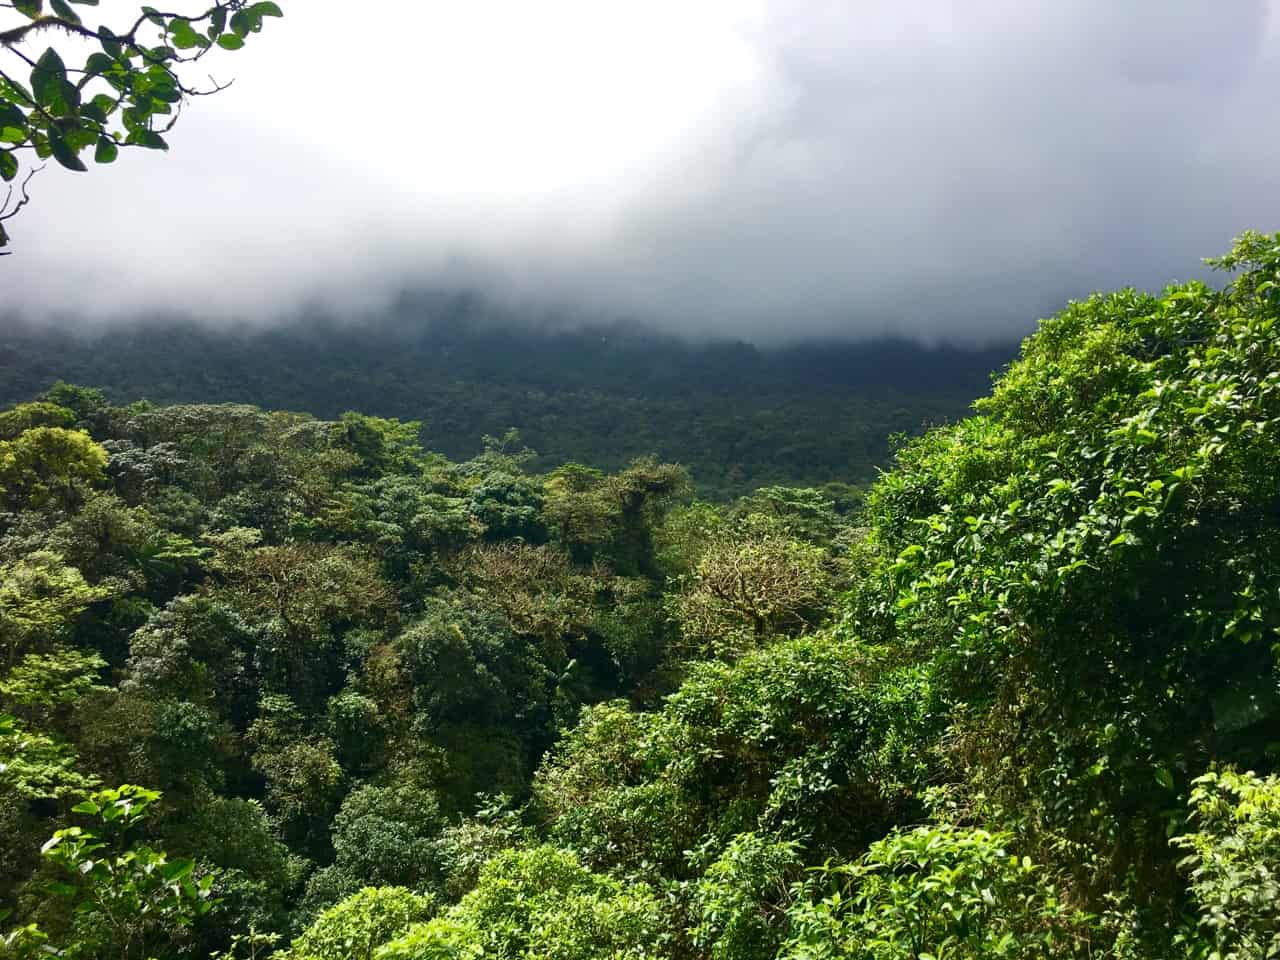  Le nuvole coprono la foresta e oscurano la vista del vulcano Tenorio in Costa Rica.